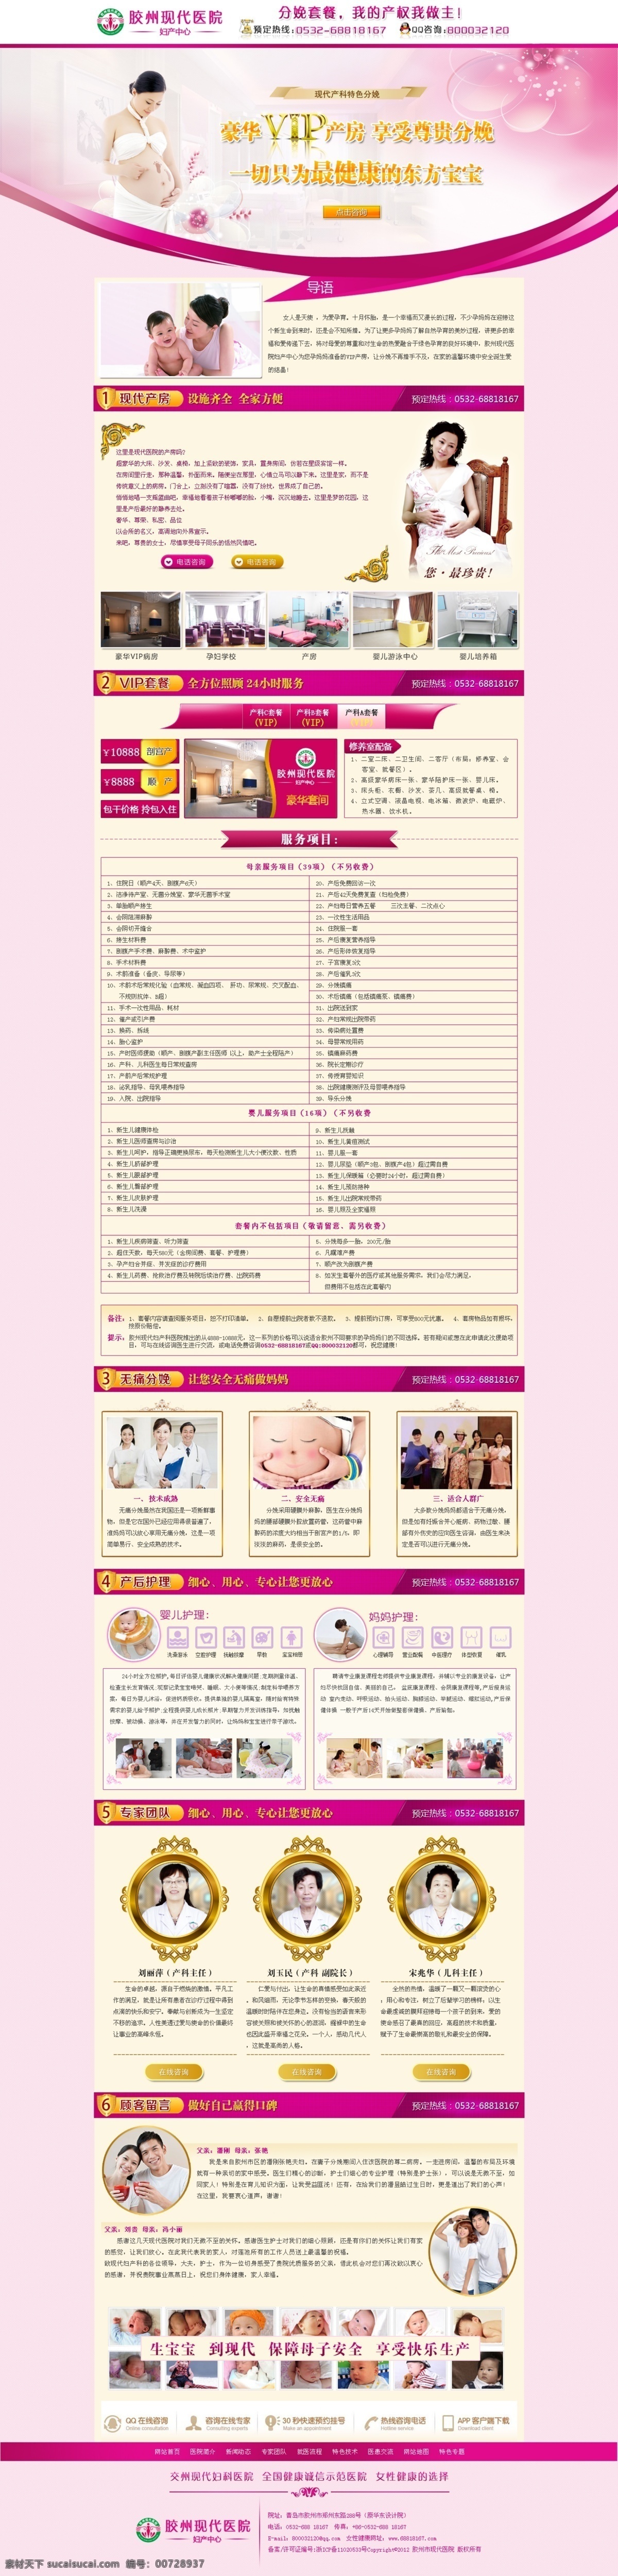 产科 专题 vip 医院 孕妇 产妇 产房 原创设计 原创网页设计